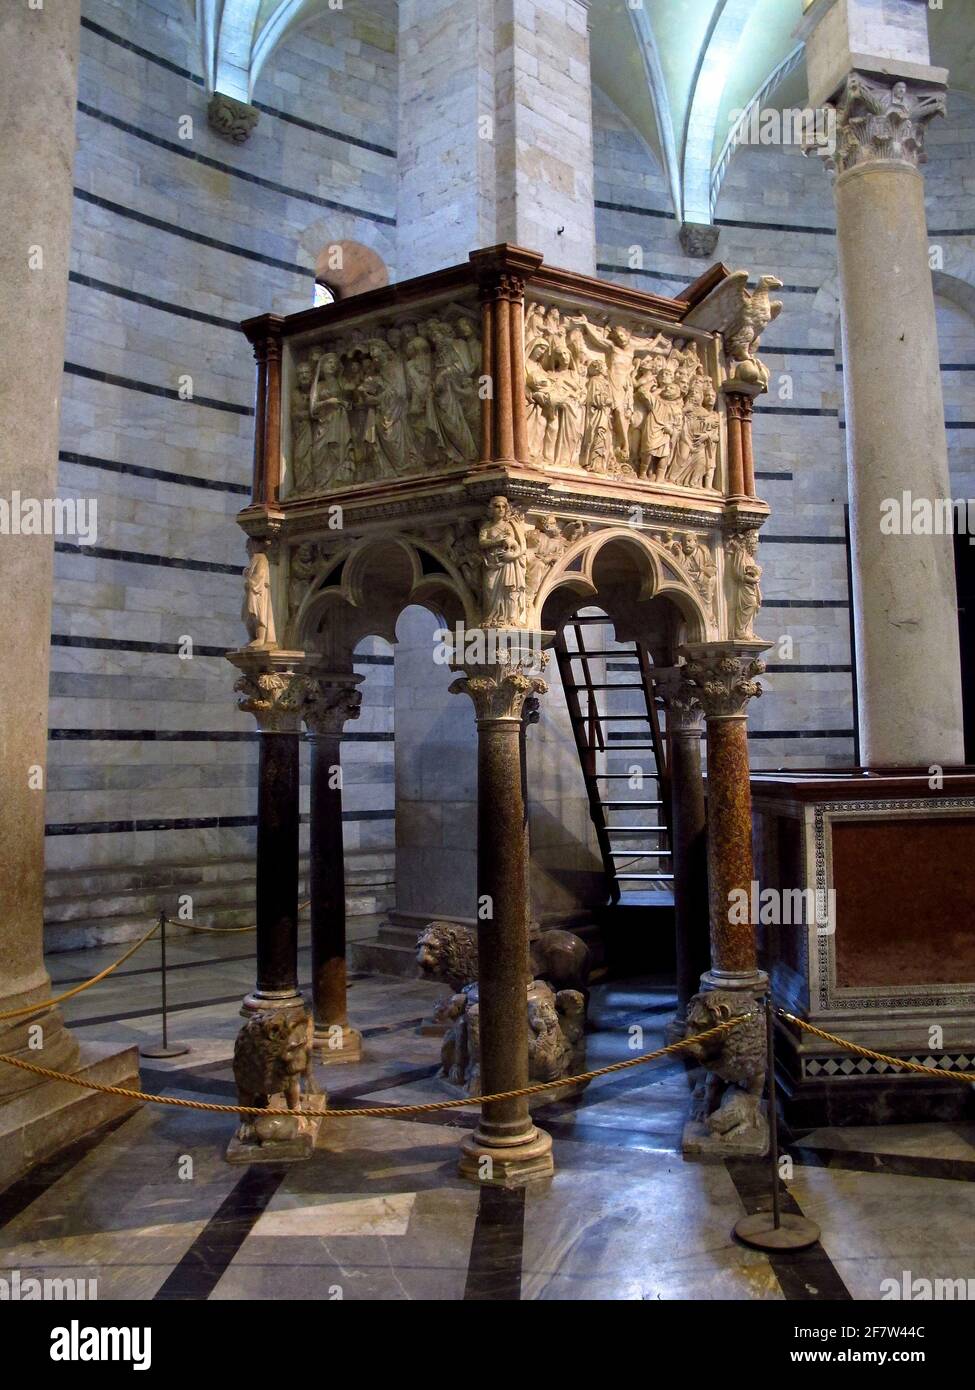 St. John's Baptistery, Pisa, Italy Stock Photo